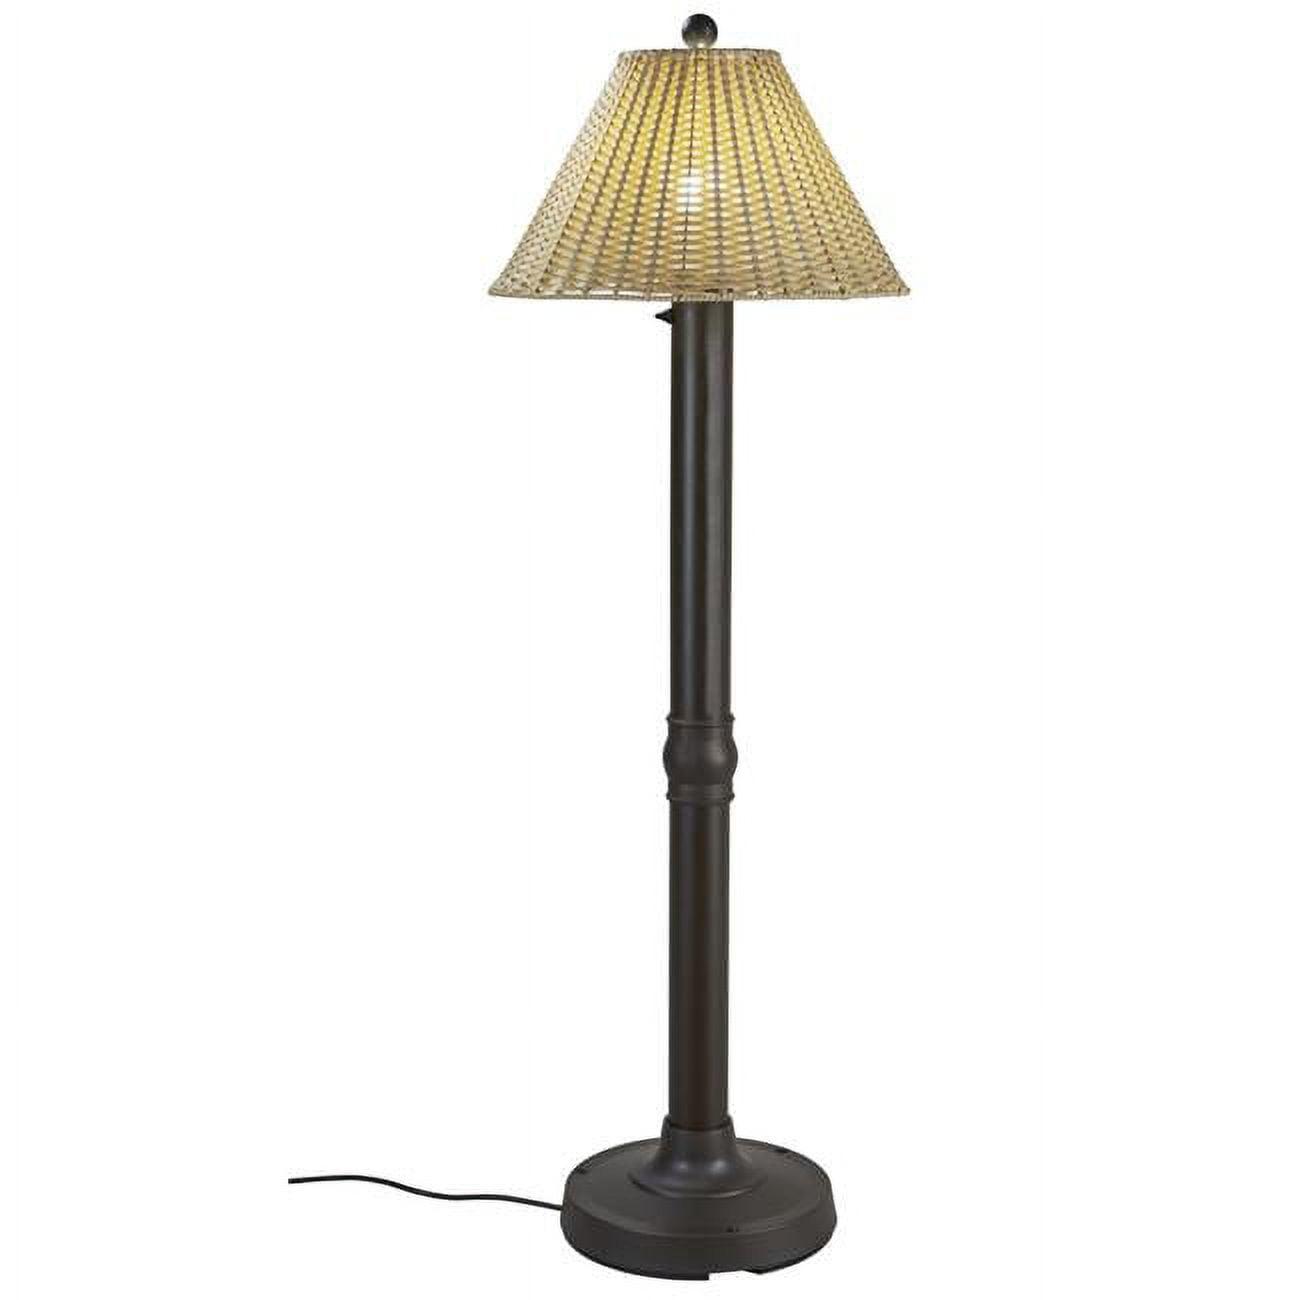 Elegant Outdoor Bronze Resin 60" Floor Lamp with Woven Wicker Shade